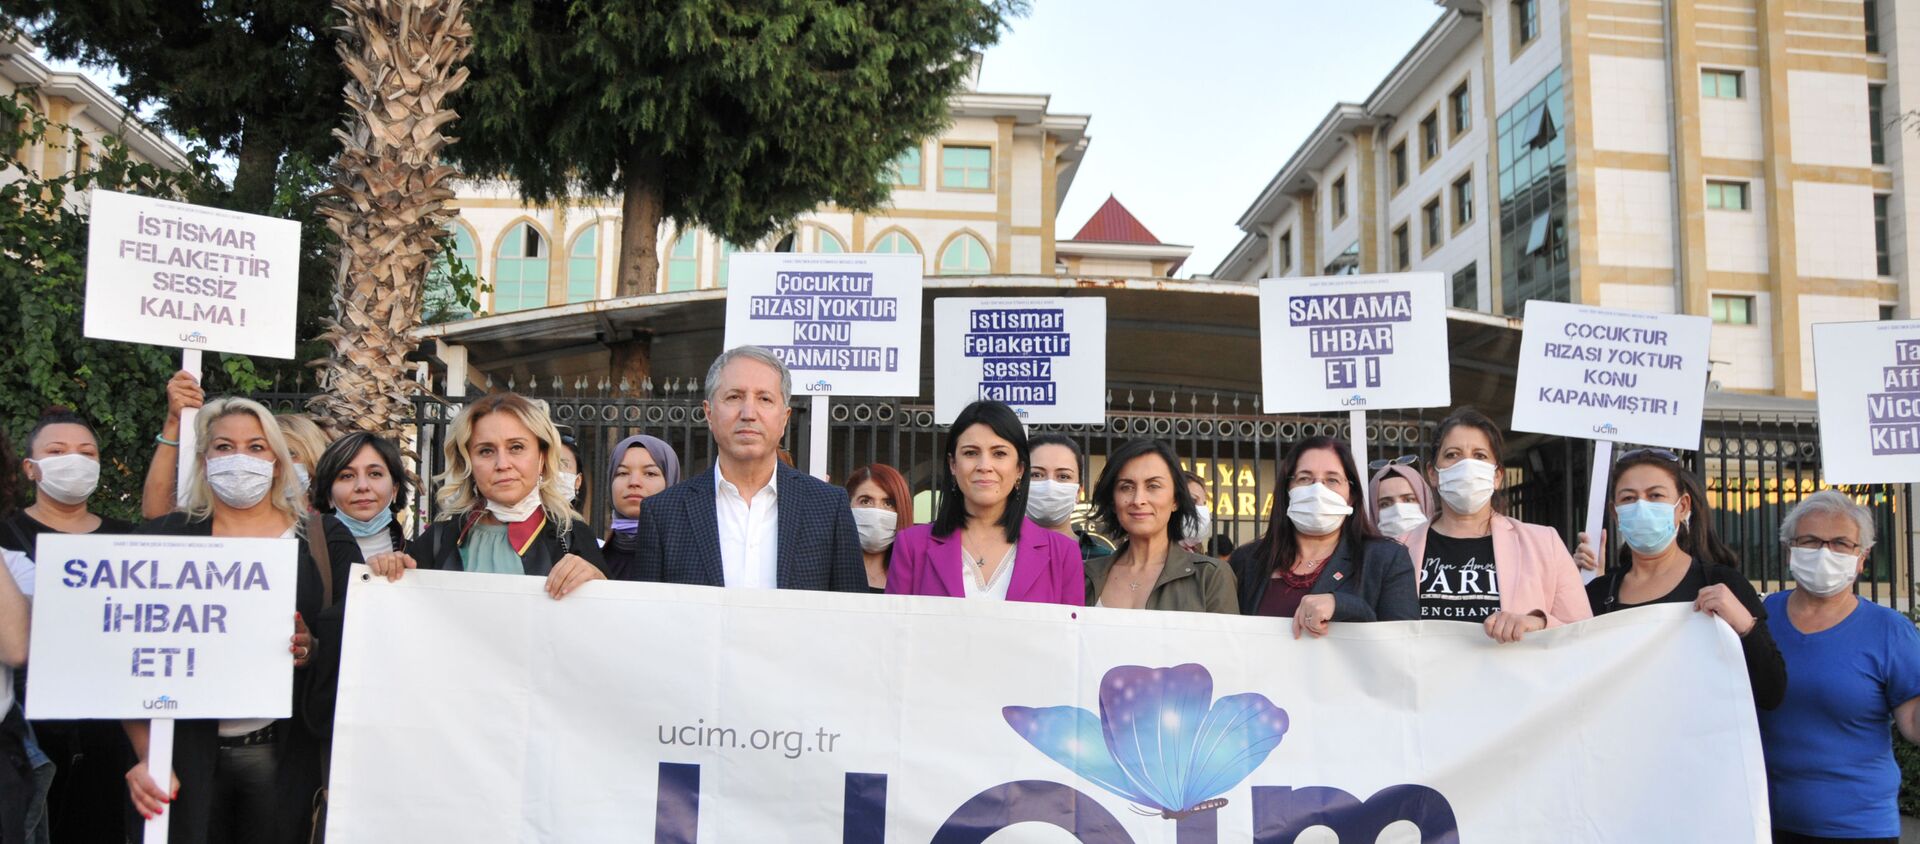 Antalya'da 26 öğrencisine cinsel istismarda bulunan öğretmen Mahmut Aydın Köksar 621 yıl hapis cezası aldı - Sputnik Türkiye, 1920, 11.11.2020